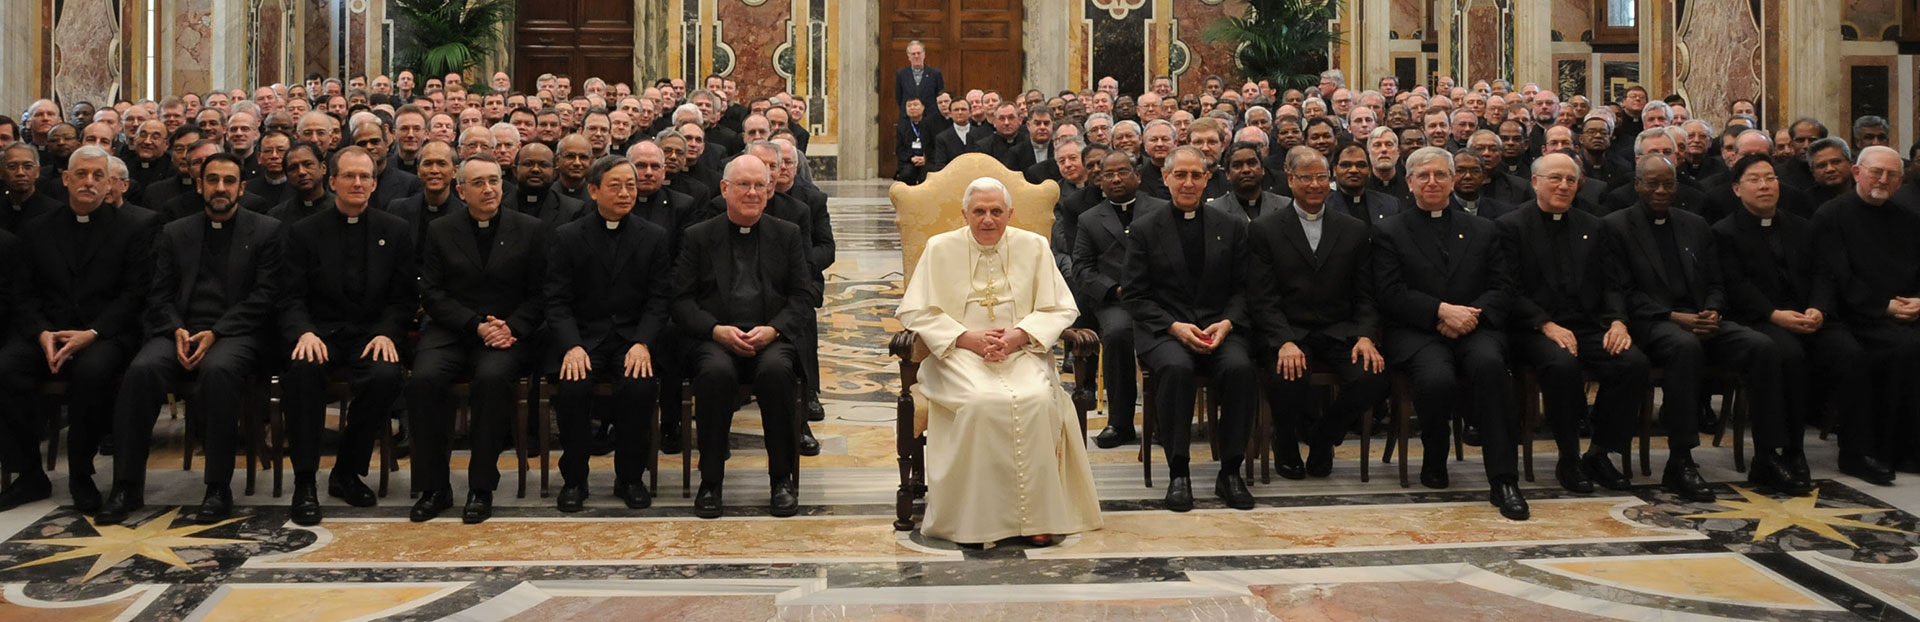 Papa emerito Benedetto XVI: “La Compagnia di Gesù condivide il dolore di tutta la Chiesa”, dice p. Sosa